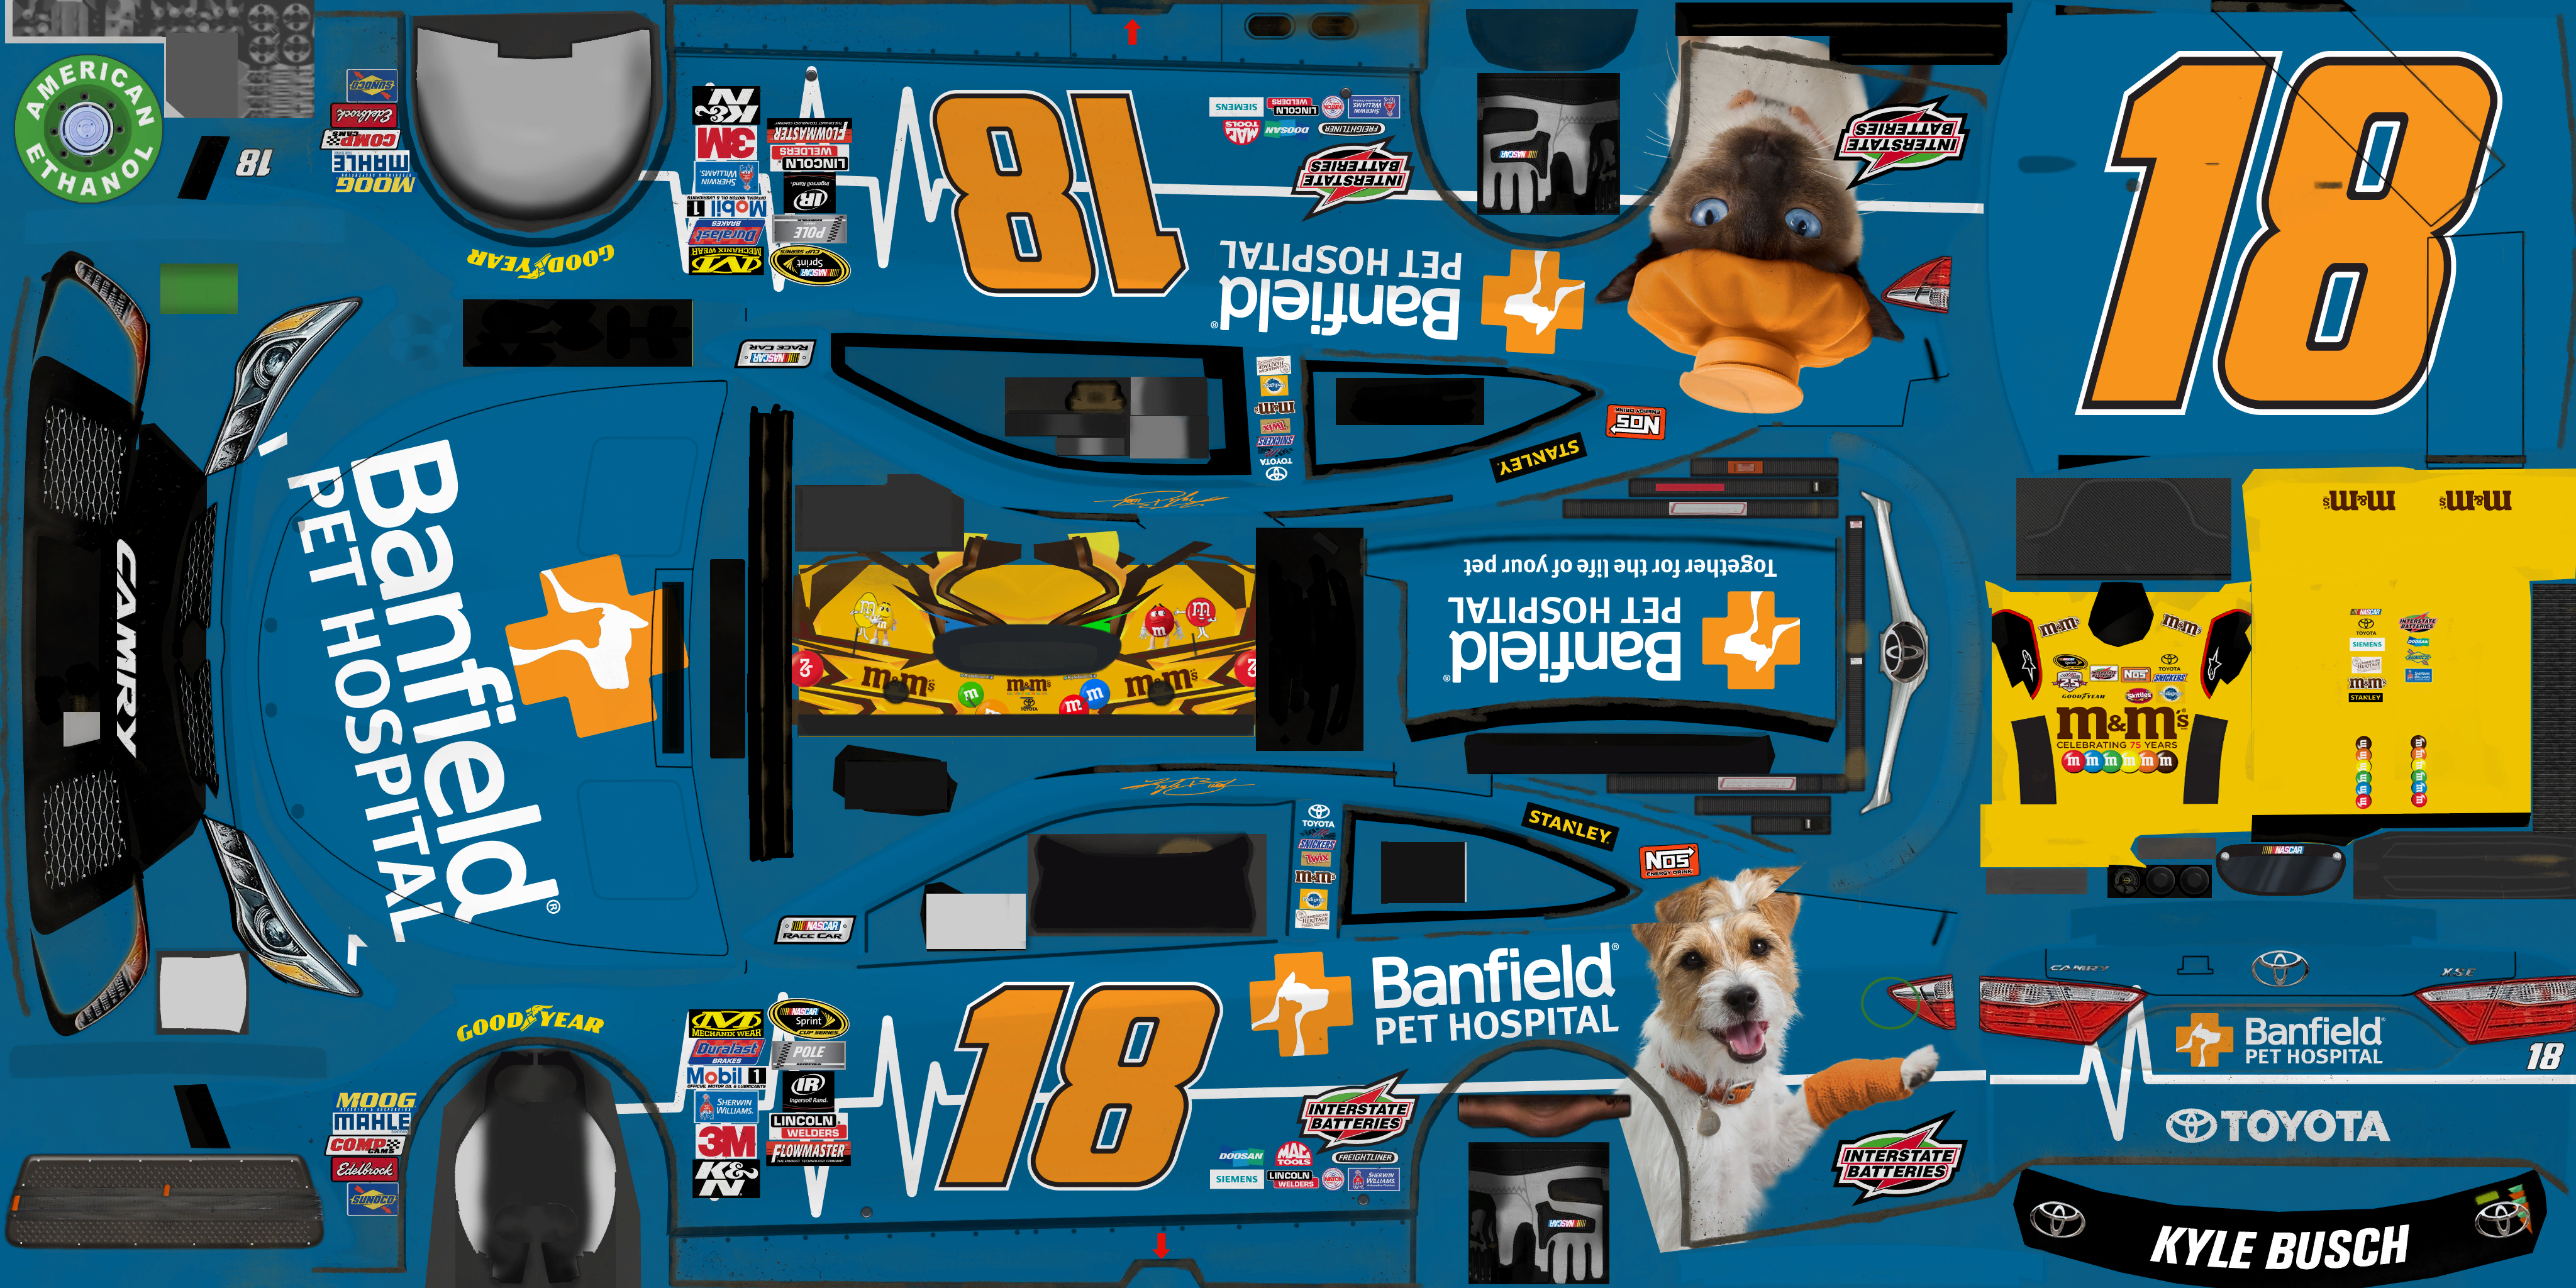 NASCAR Heat Evolution - #18 Kyle Busch (Banfield Pet Hospital)